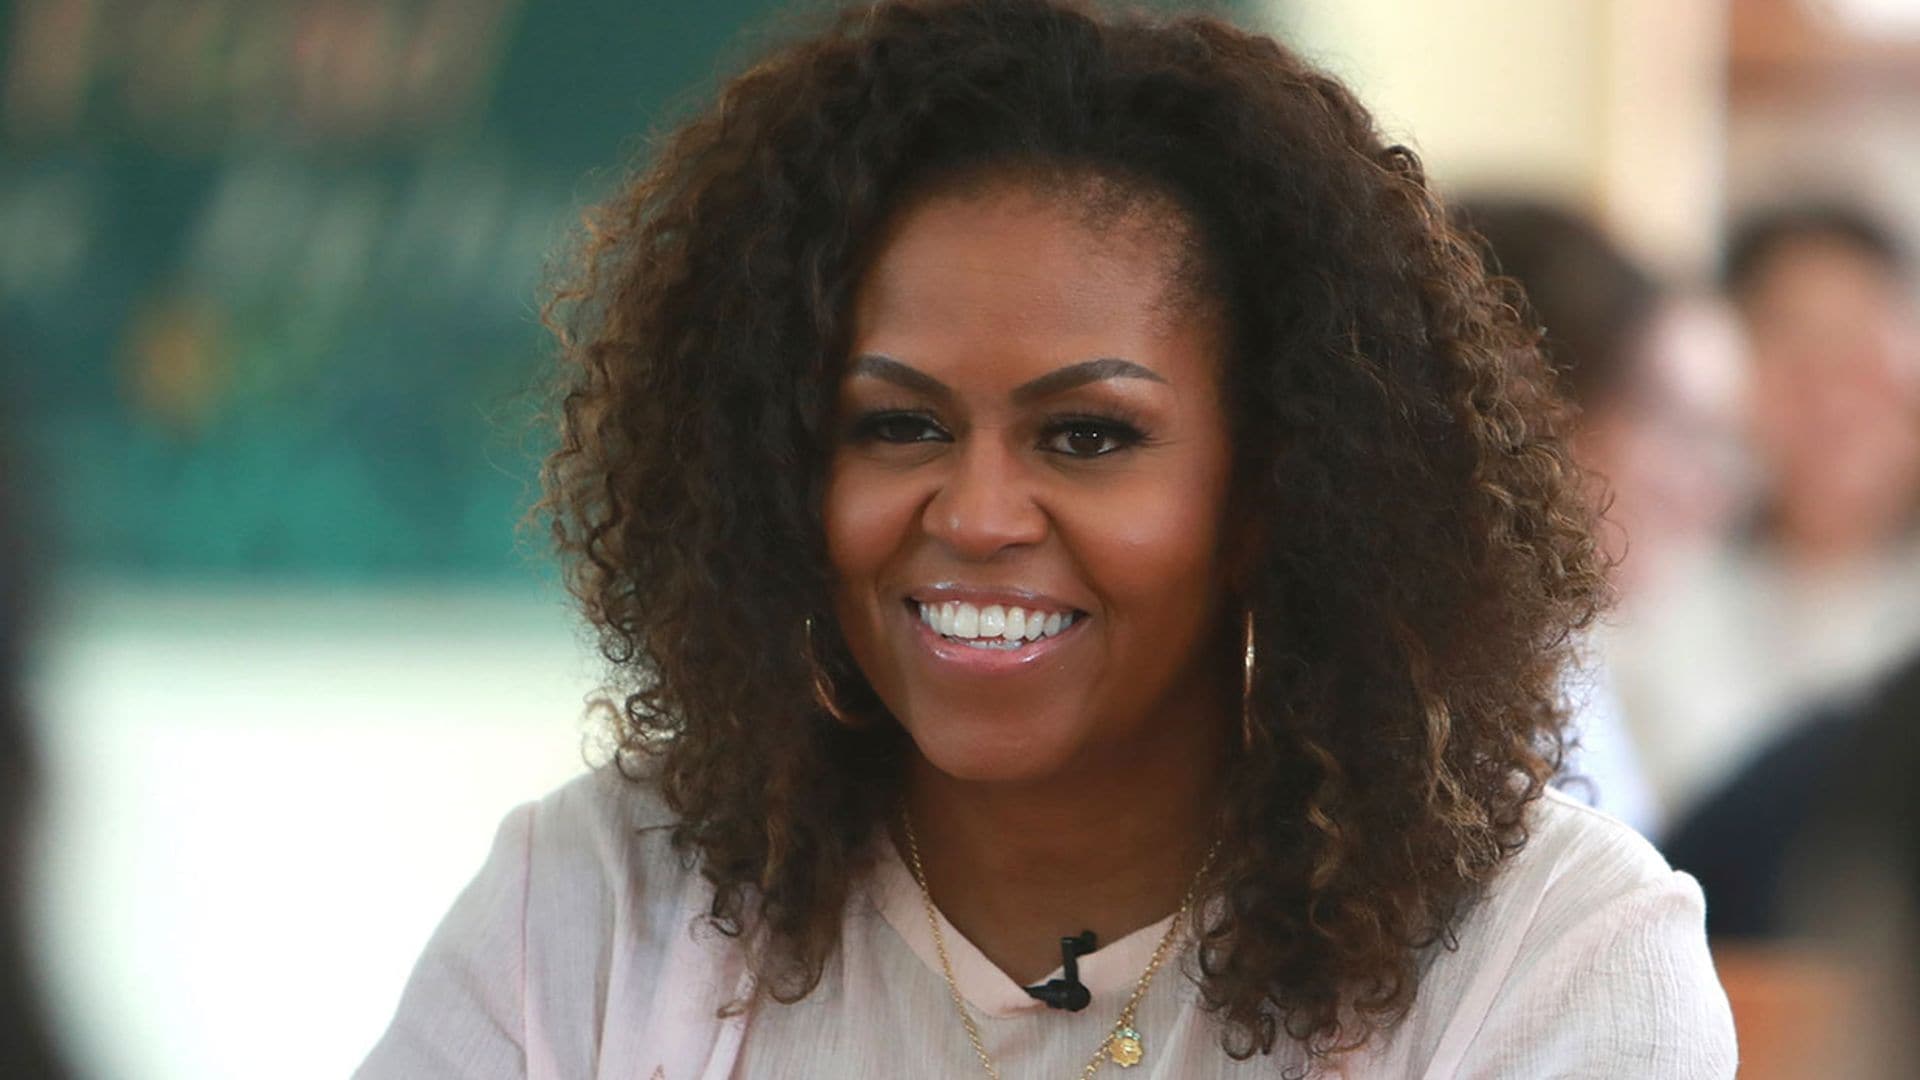 Michelle Obama elegida de nuevo 'la mujer más admirada del mundo'